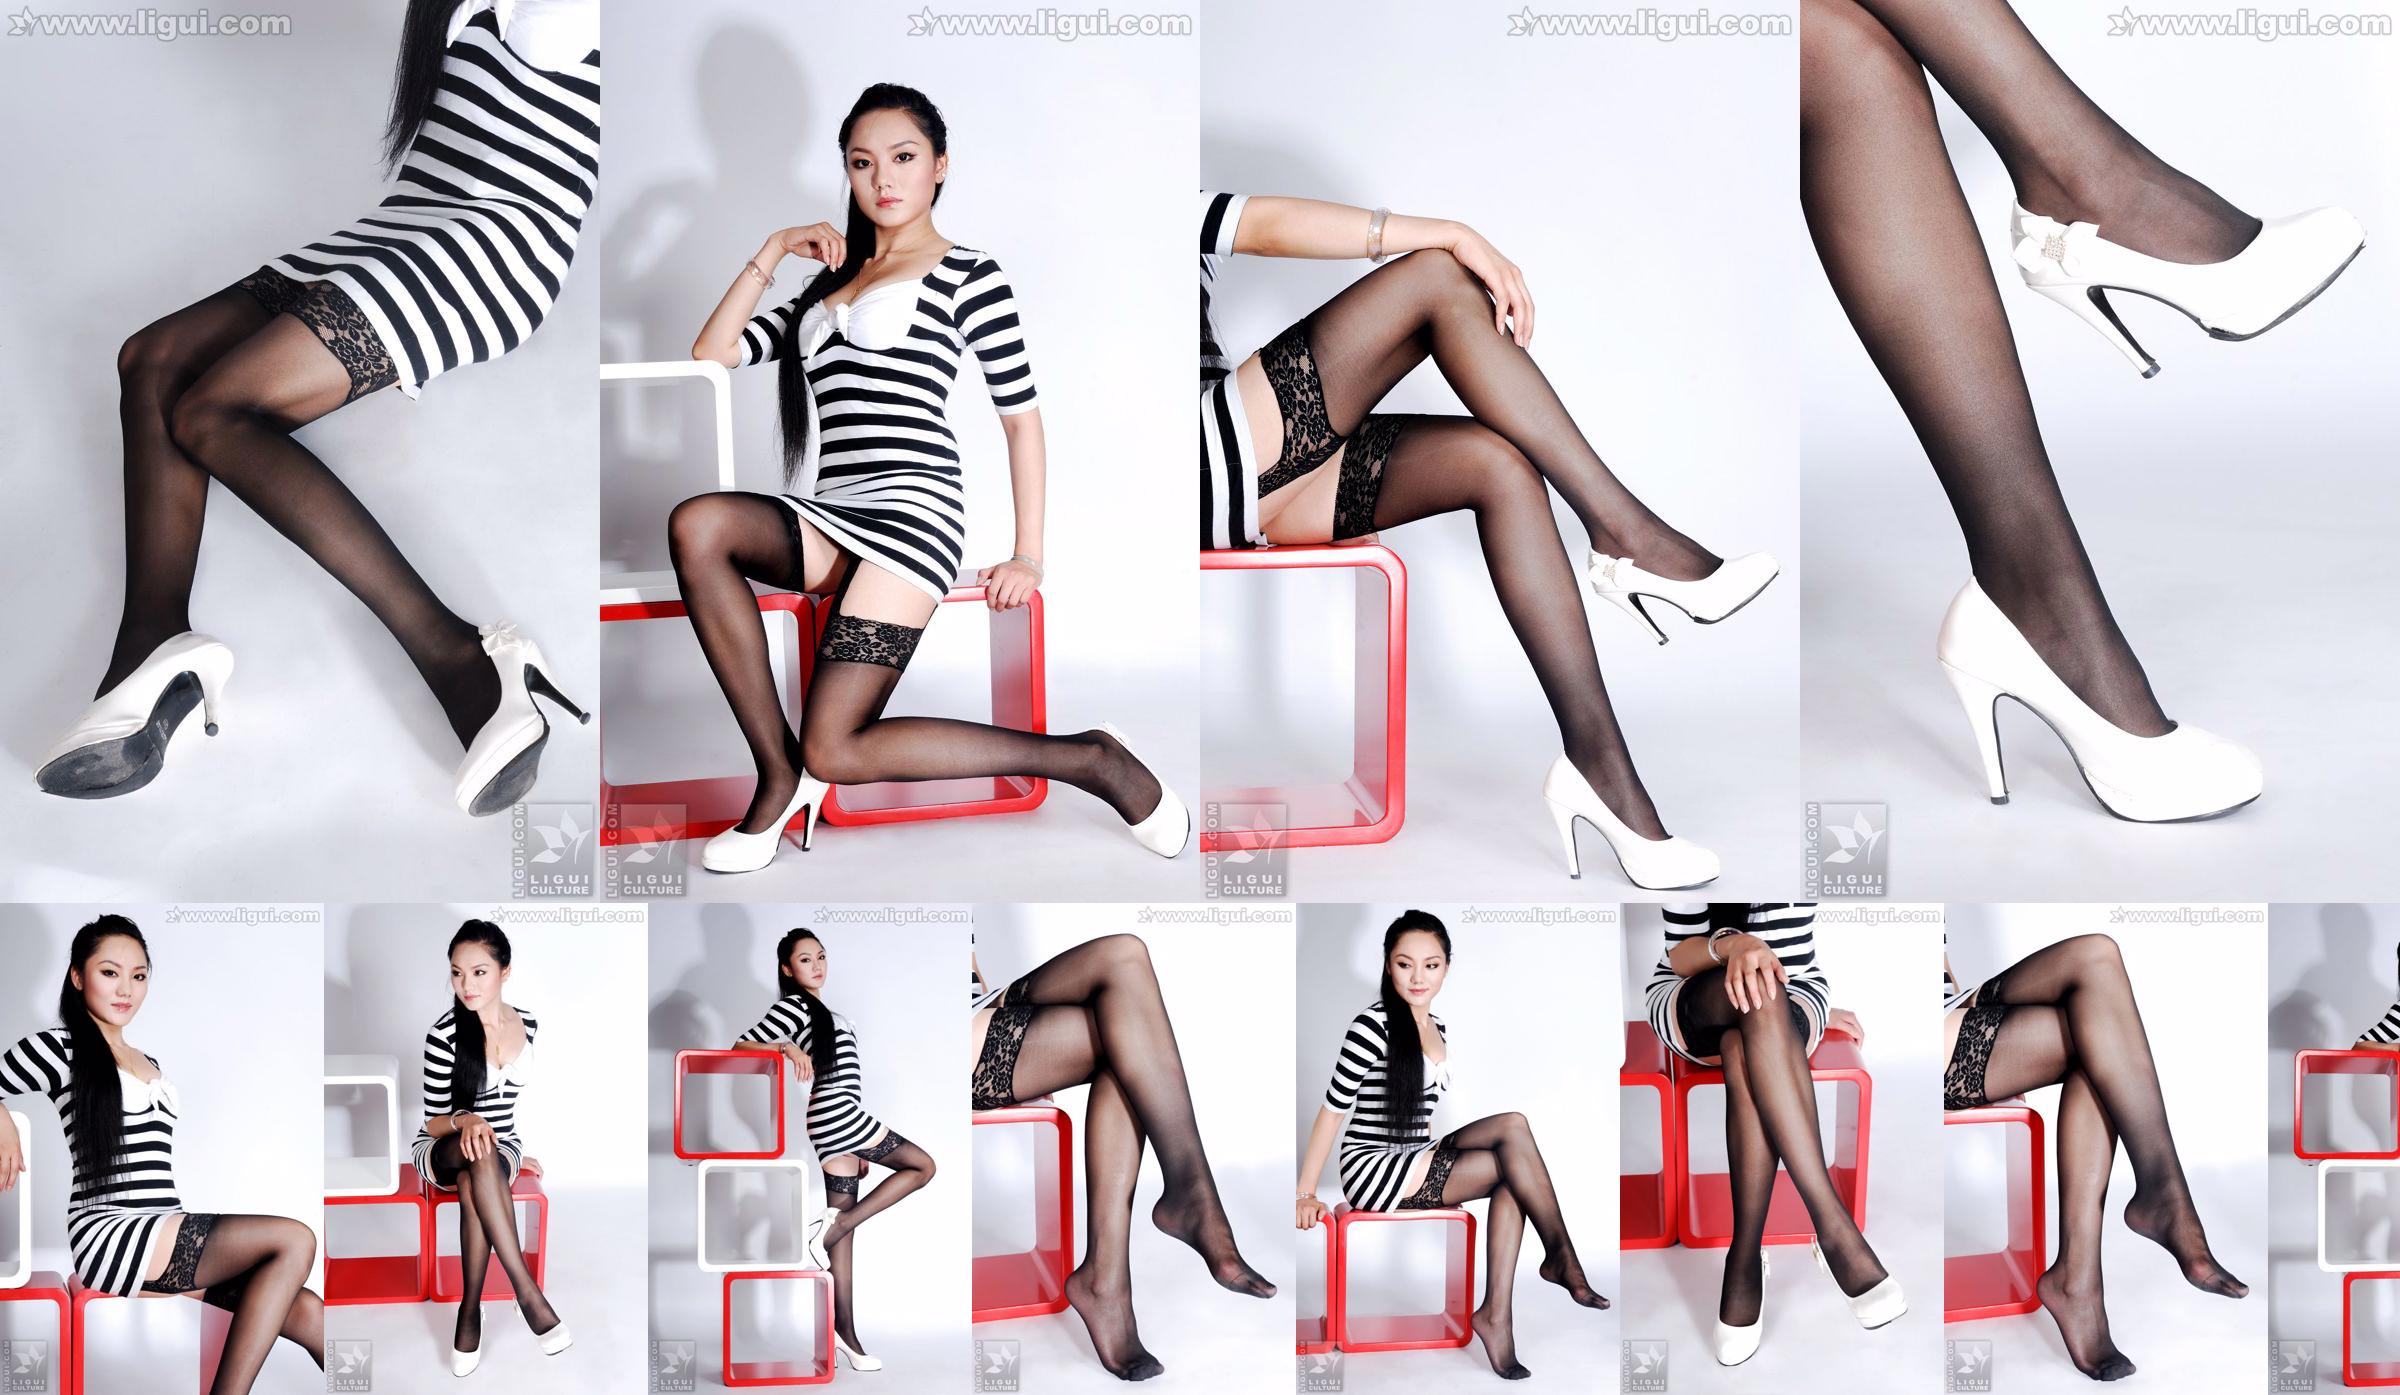 นางแบบ Yang Zi "The Charm of Stockings in Simple Home Decoration" [丽柜 LiGui] รูปถ่ายขาสวยและเท้าหยก No.1b2903 หน้า 1